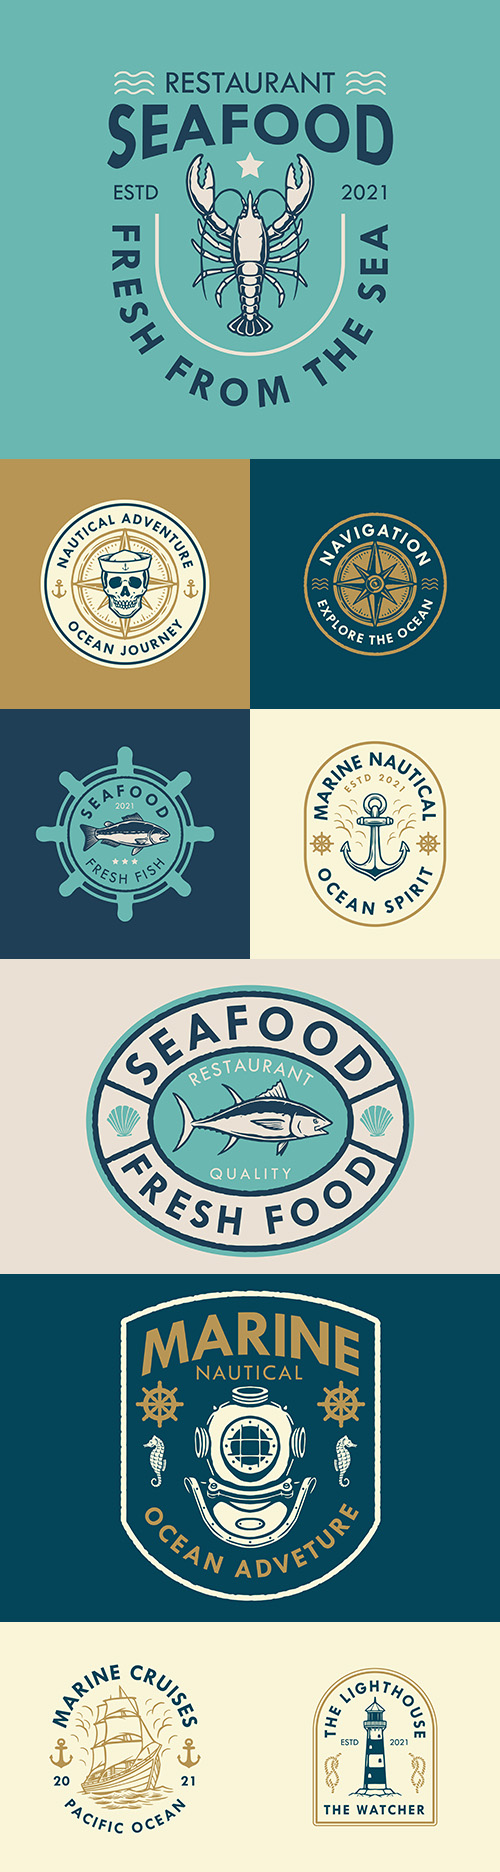 Marine logo design and retro style badges illustration
